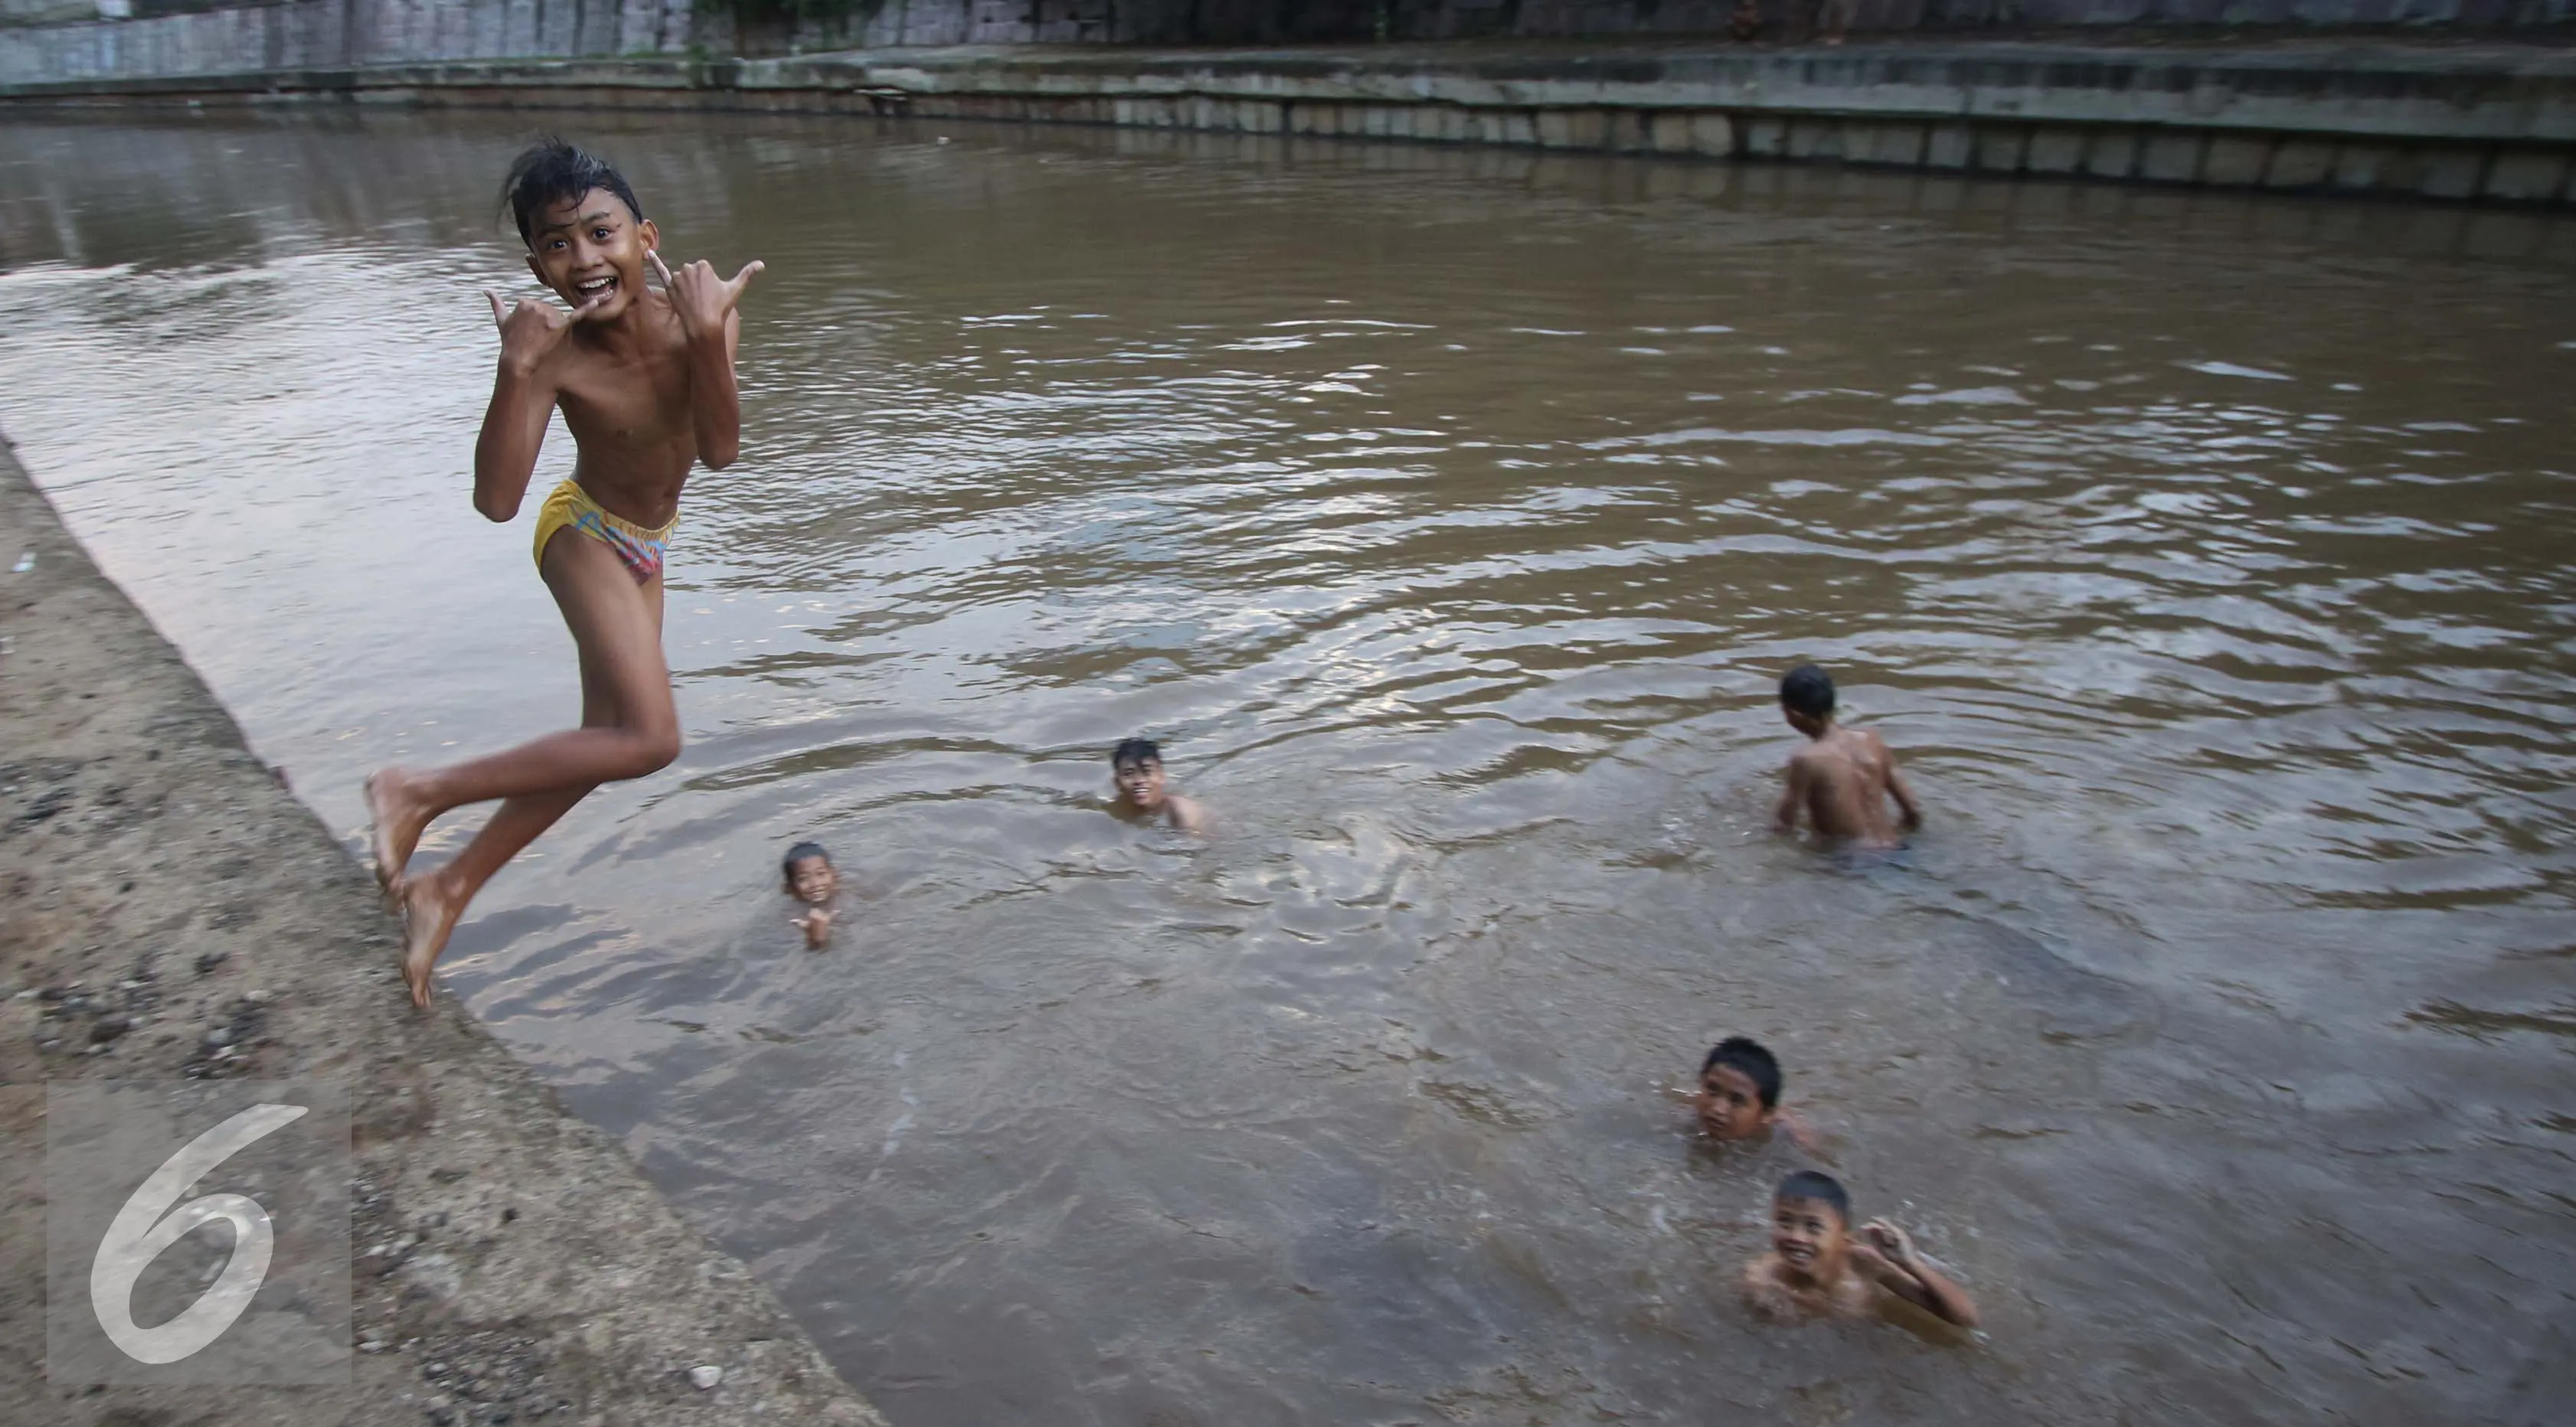 Sejumlah anak berumur belasan tahun riang gembira mandi di sungai Ciliwung, Jakarta, Rabu (16/11). Air di Sungai Ciliwung yang mulai bersih menjadi daya tarik anak-anak ini untuk mandi di sana. (Liputan6.com/Gempur M Surya)